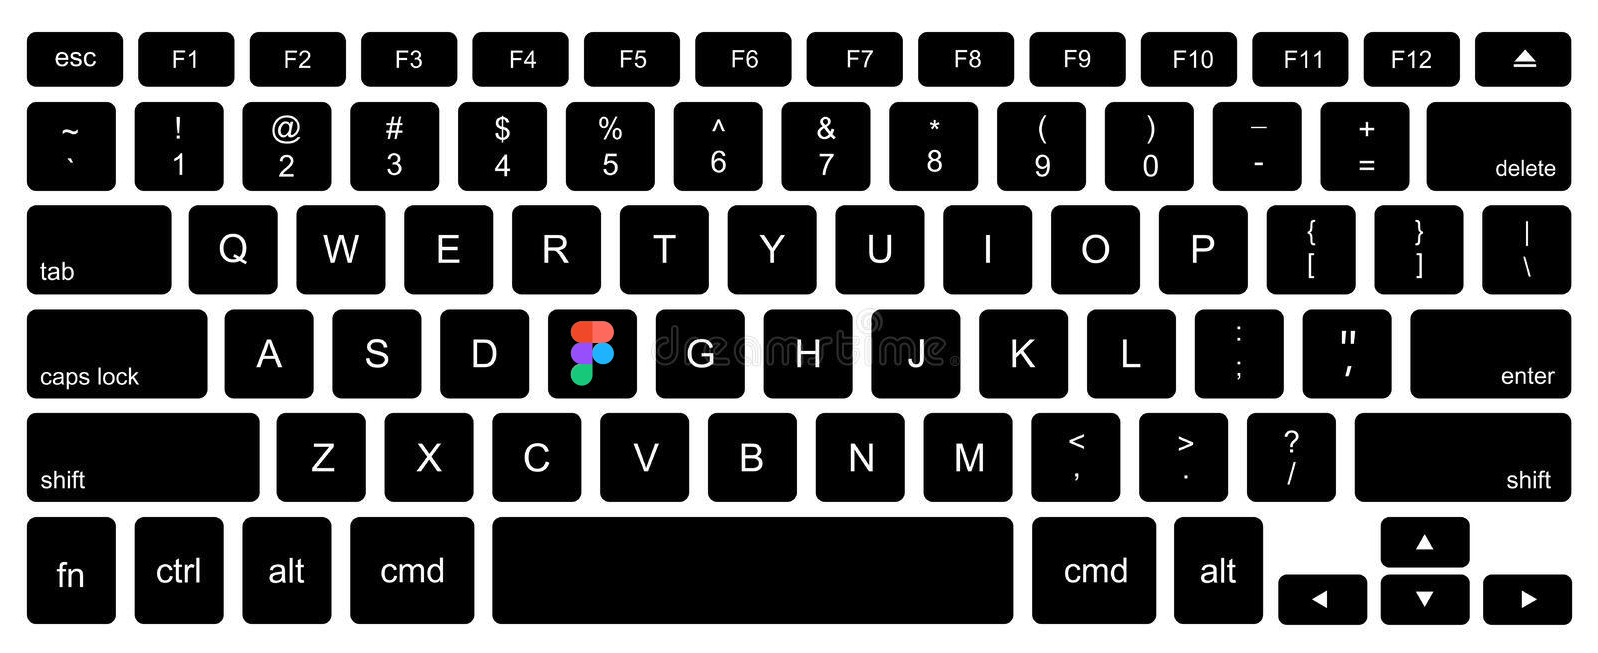 laptop keyboard layout printable